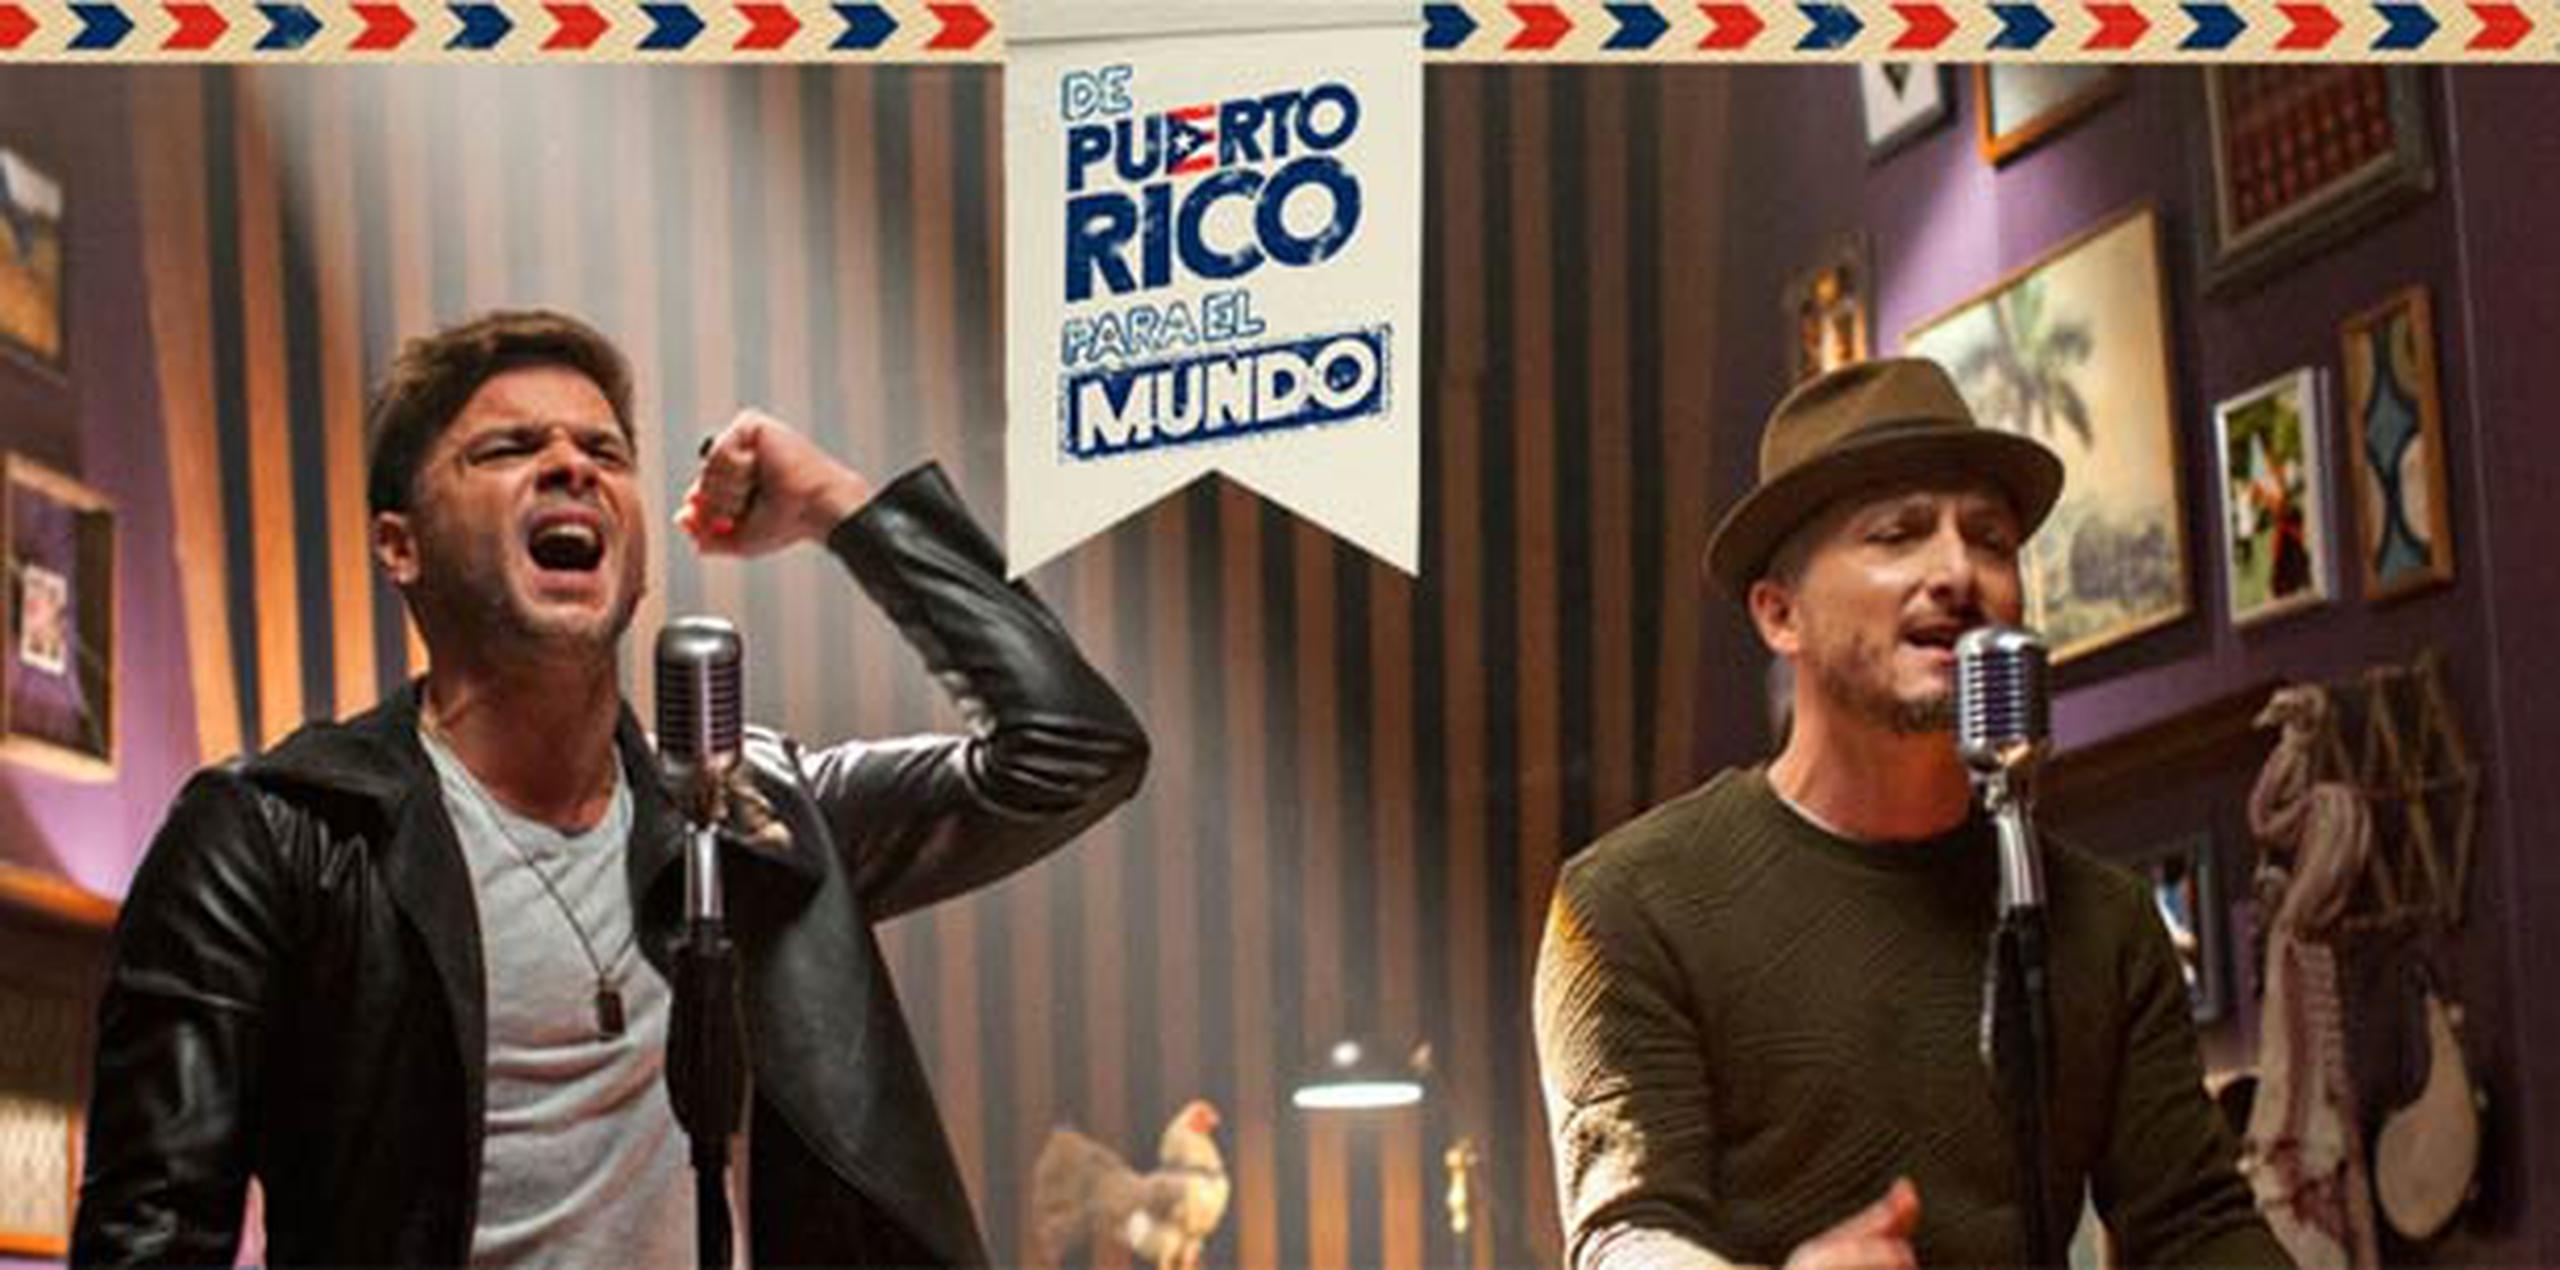 El especial "De Puerto Rico para el mundo" se transmitió anoche por los principales canales del país.